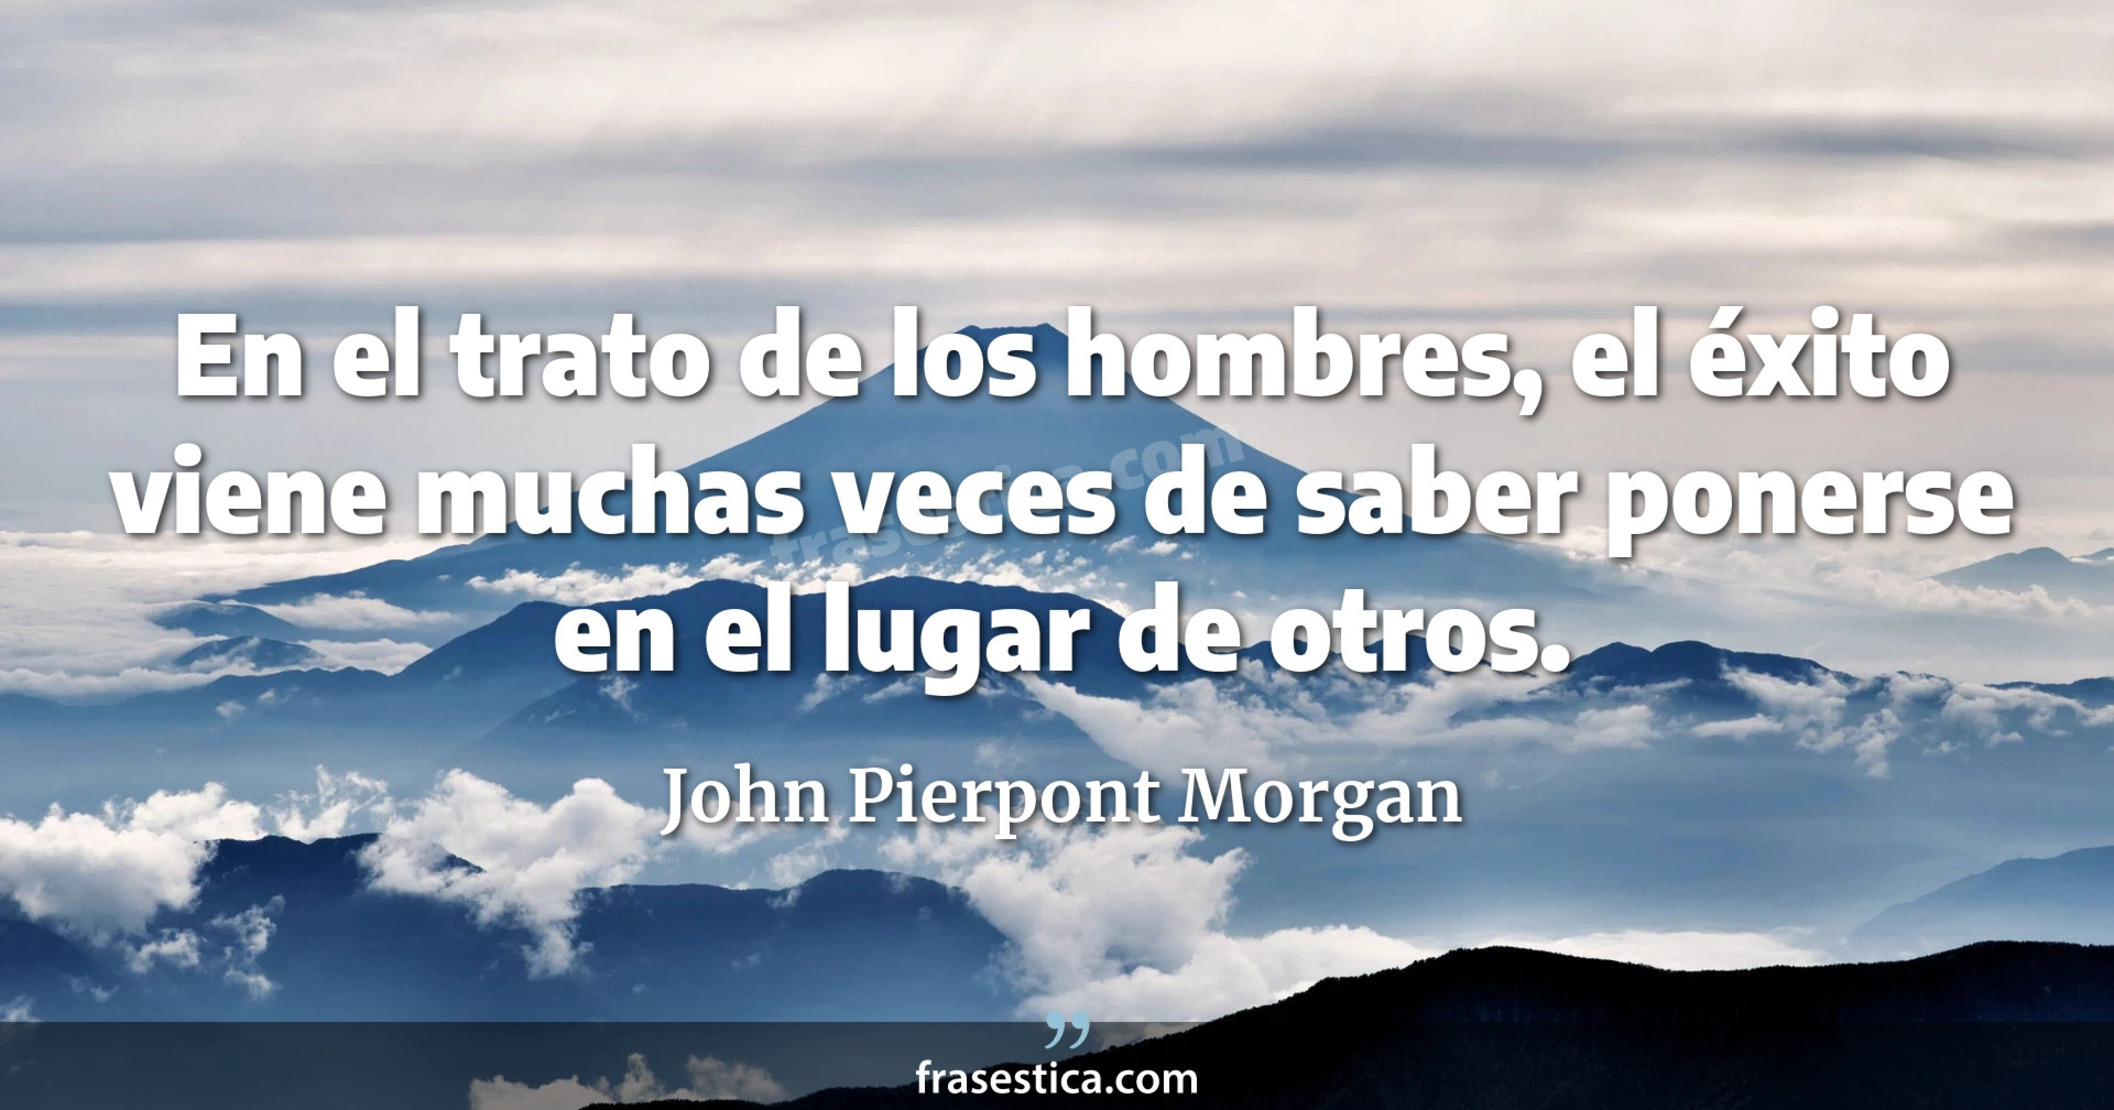 En el trato de los hombres, el éxito viene muchas veces de saber ponerse en el lugar de otros. - John Pierpont Morgan